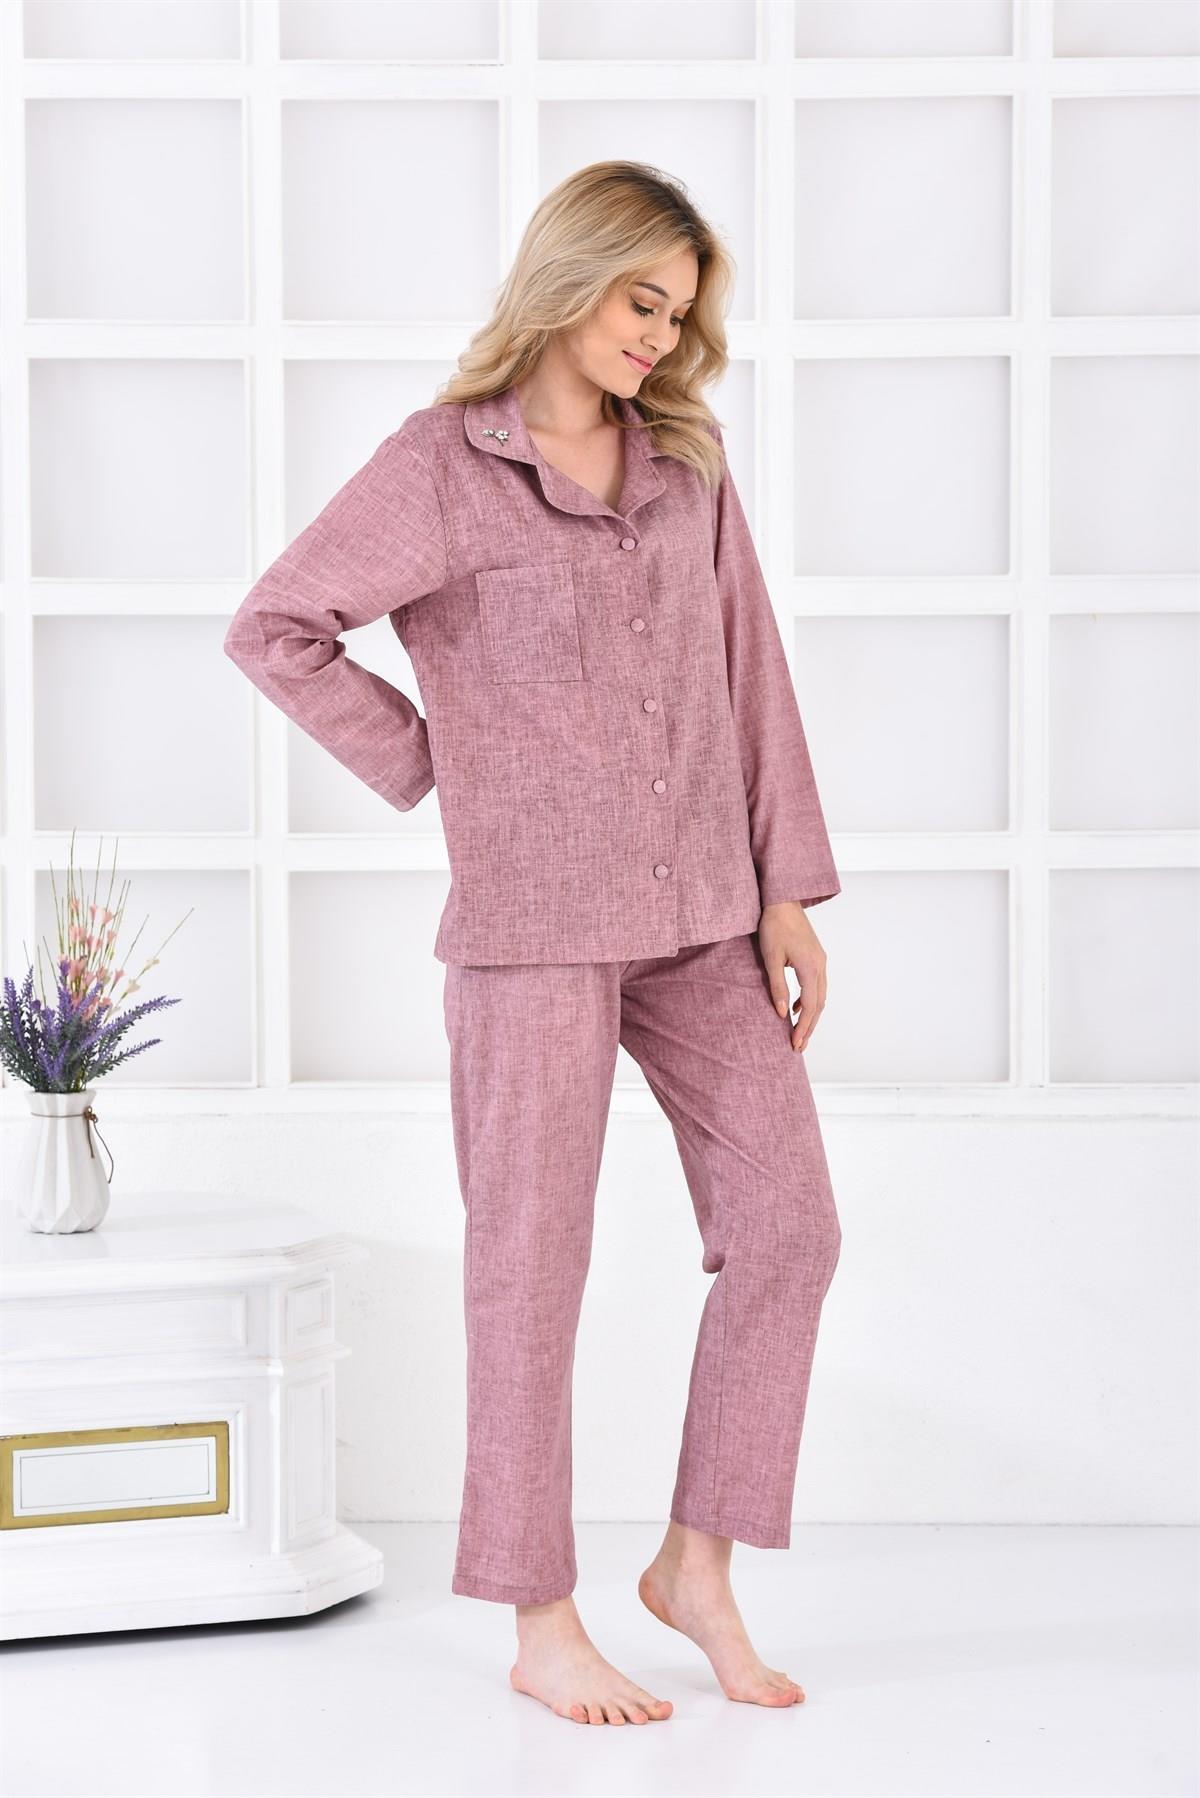 Ecocotton Helen Kadın Pijama Takımı %100 Organik Pamuk Keten Karışımlı Mürdüm